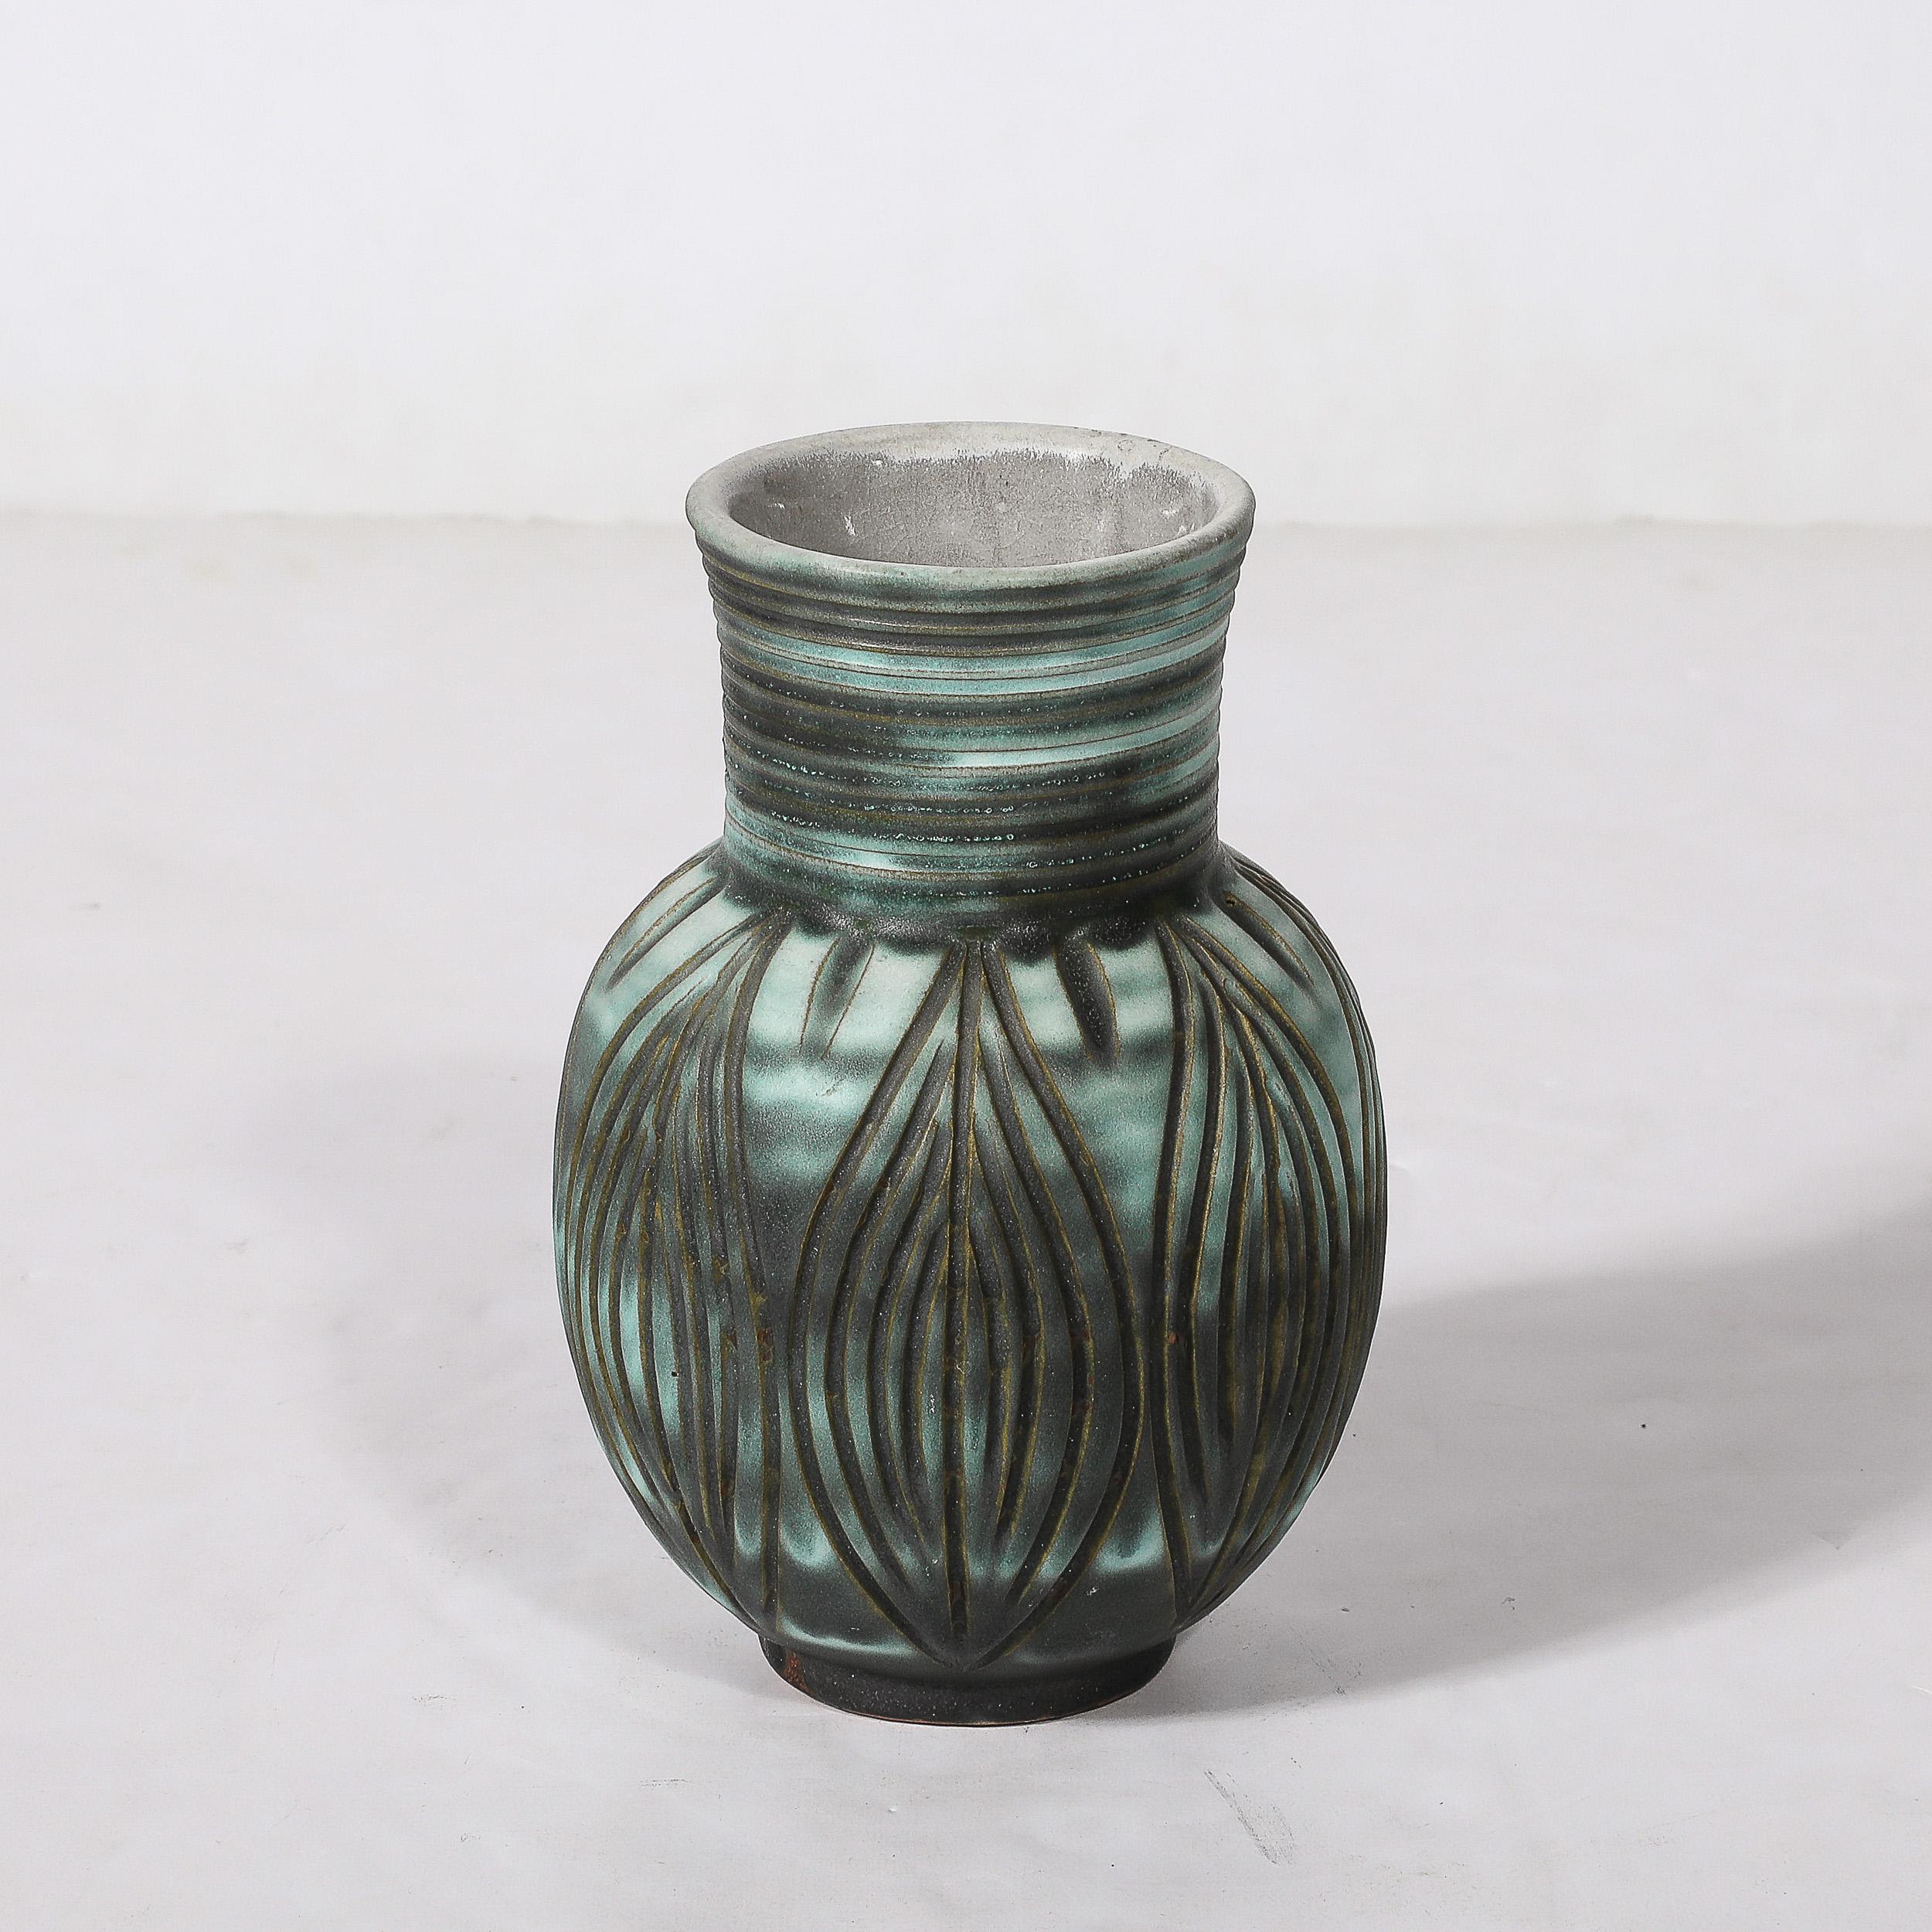 Ce rare et magnifique vase moderniste du milieu du siècle, de couleur sarcelle et ambre fumé, avec des détails linéaires rainurés, a été réalisé par l'estimée société Design Techniques et provient des États-Unis, vers 1970. Le corps est arrondi et